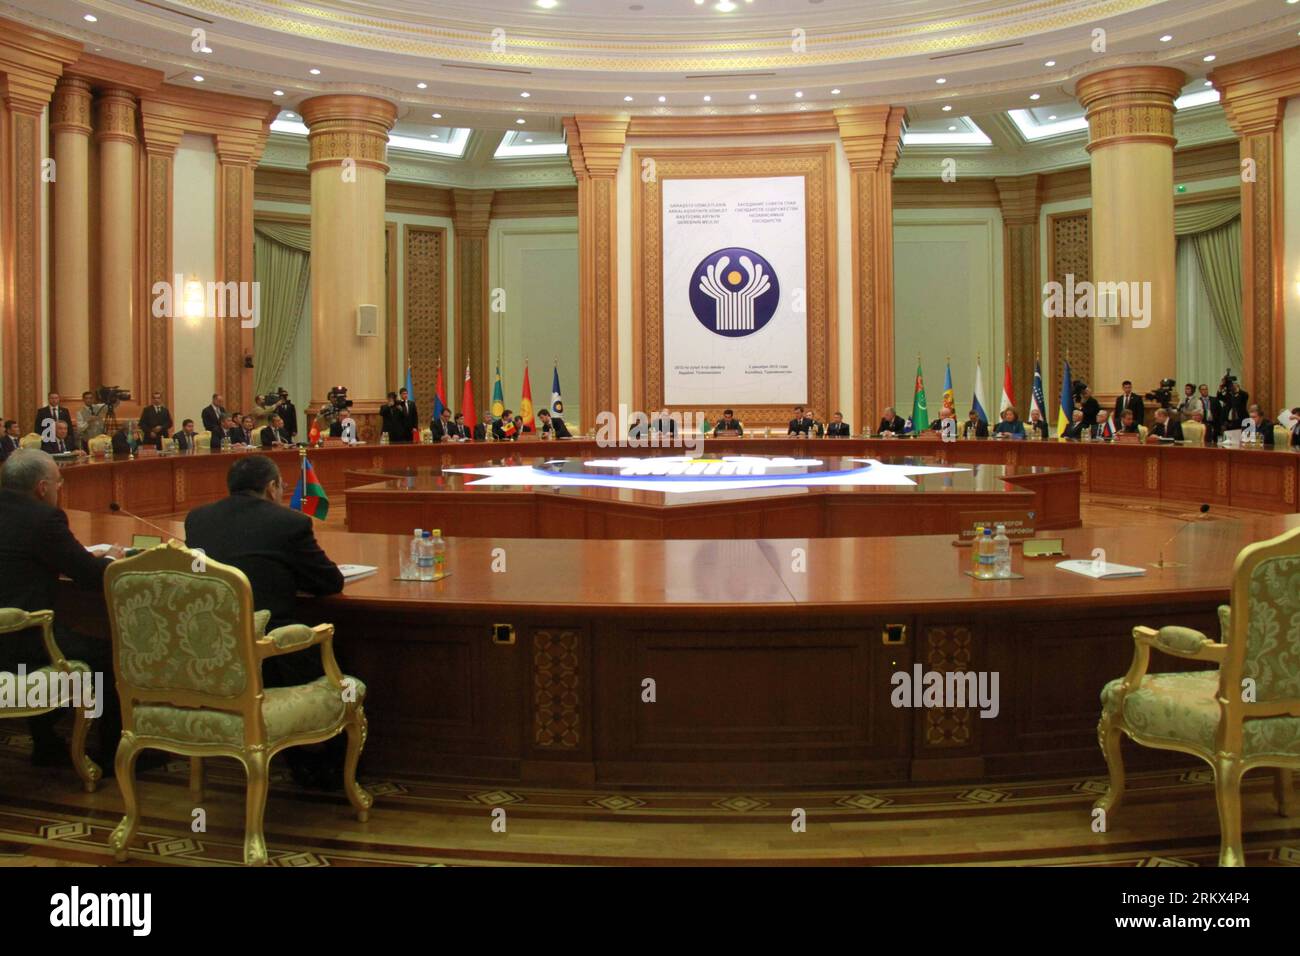 Bildnummer: 58886723 Datum: 05.12.2012 Copyright: imago/Xinhua ASHGABAT, 5 dicembre 2012 --il vertice della Comunità degli Stati indipendenti (CSI) si tiene ad Ashgabat in Turkmenistan il 5 dicembre 2012. (Xinhua/Lu Jingli) (zcc) TURKMENISTAN-ASHGABAT-CIS-SUMMIT PUBLICATIONxNOTxINxCHN People Politik GUS Konferenz Gipfel Gipfeltreffen premiumd x0x xmb 2012 quer 58886723 Data 05 12 2012 Copyright Imago XINHUA Ashgabat DEC 5 2012 il vertice della Comunità degli Stati indipendenti CSI È eroe ad Ashgabat del Turkmenistan IL 5 dicembre 2012 XINHUA Lu Jingli ZCC Turkmenistan Ashgabat CIS Summit PUBLICA Foto Stock